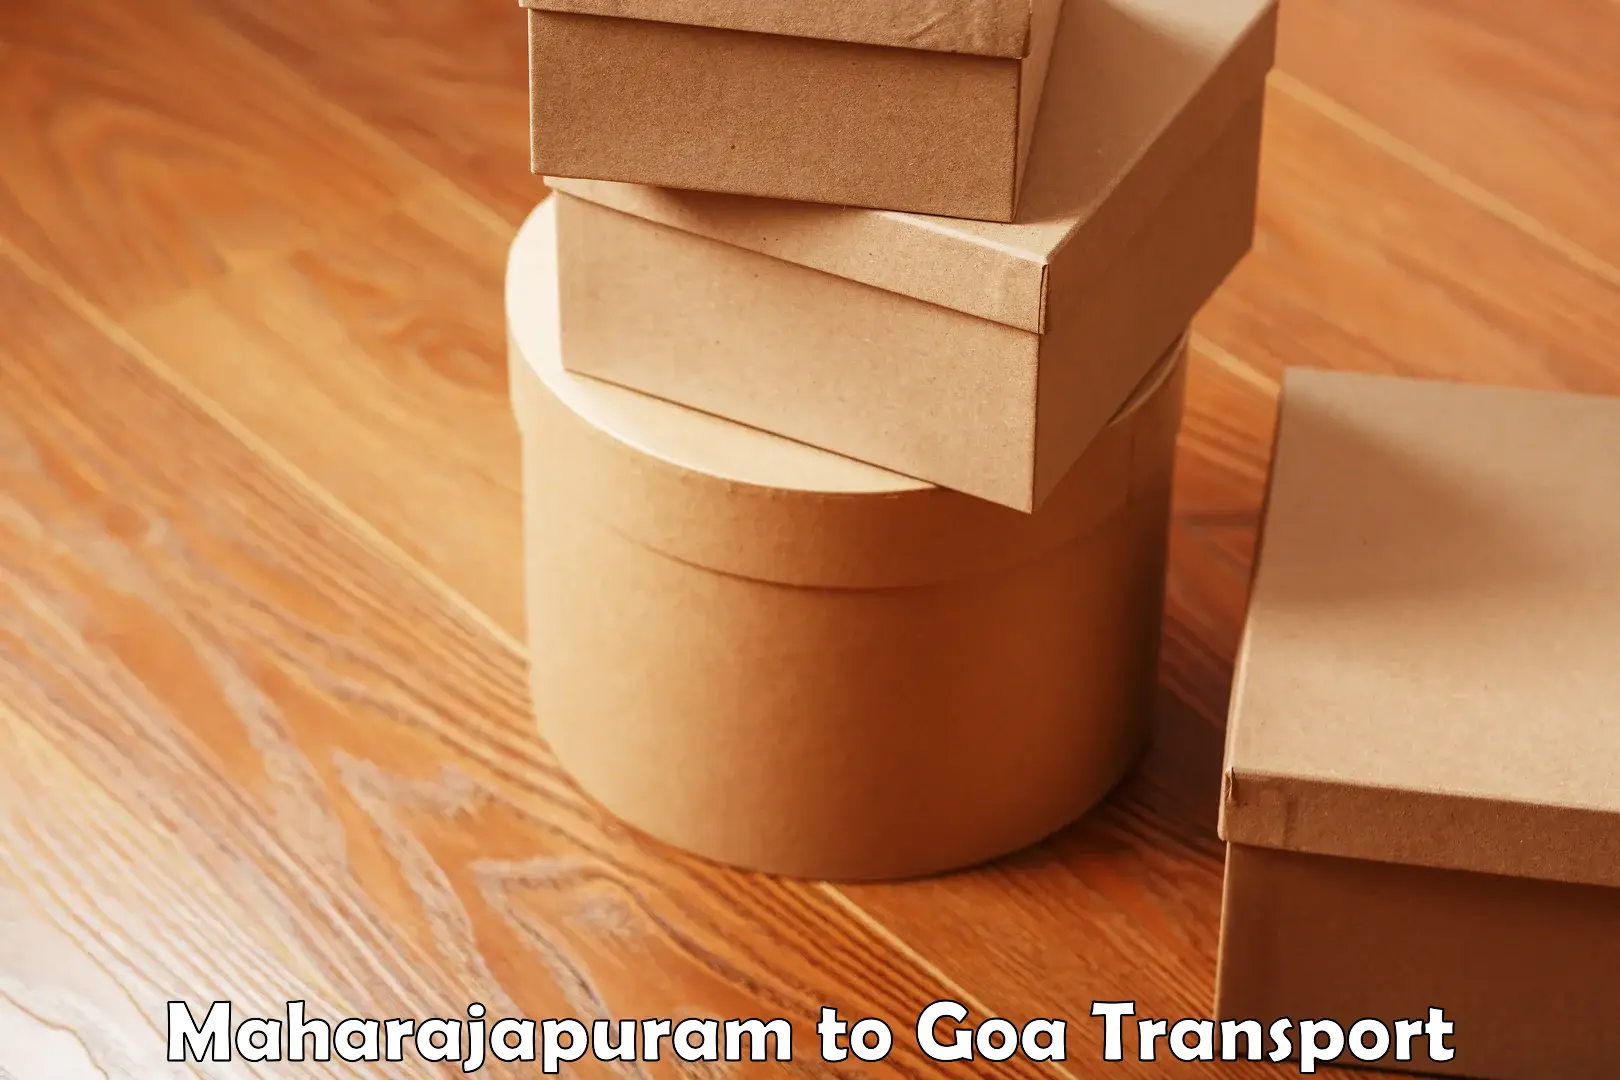 Cargo transport services Maharajapuram to NIT Goa